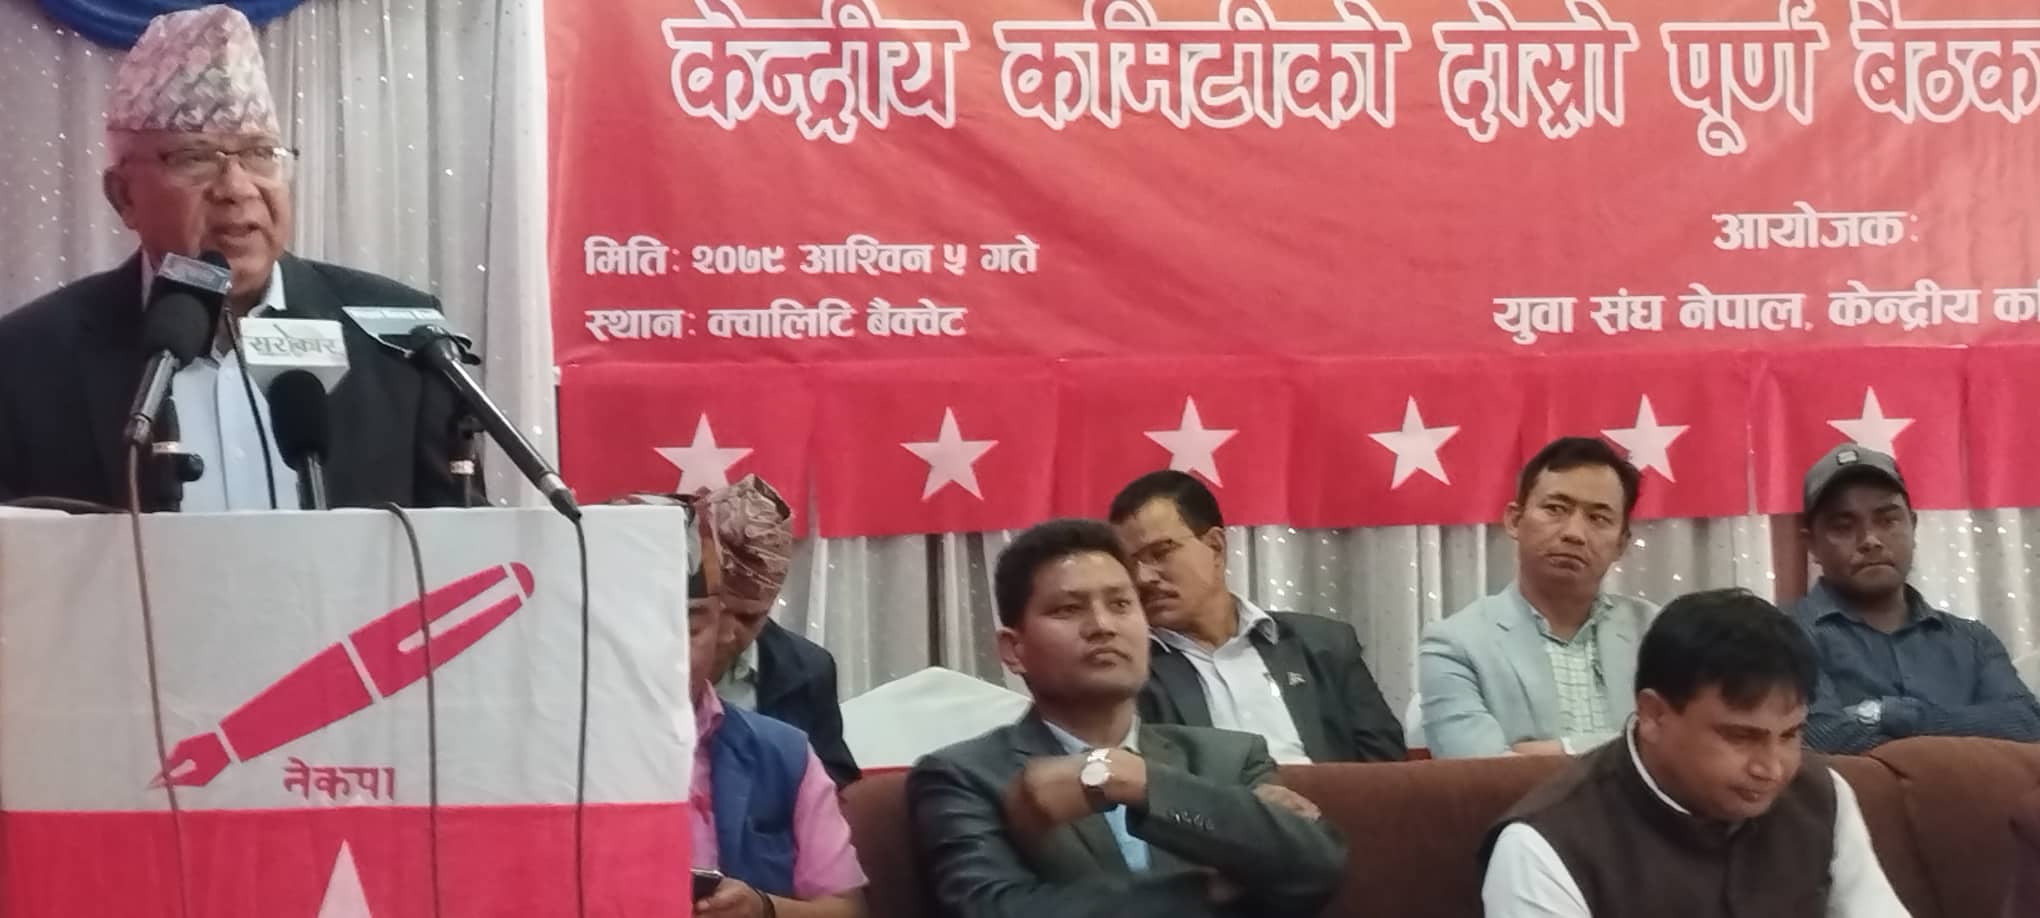 राष्ट्रपतिले अहिले संविधान उल्लंघन गरेकै हो - अध्यक्ष नेपाल  